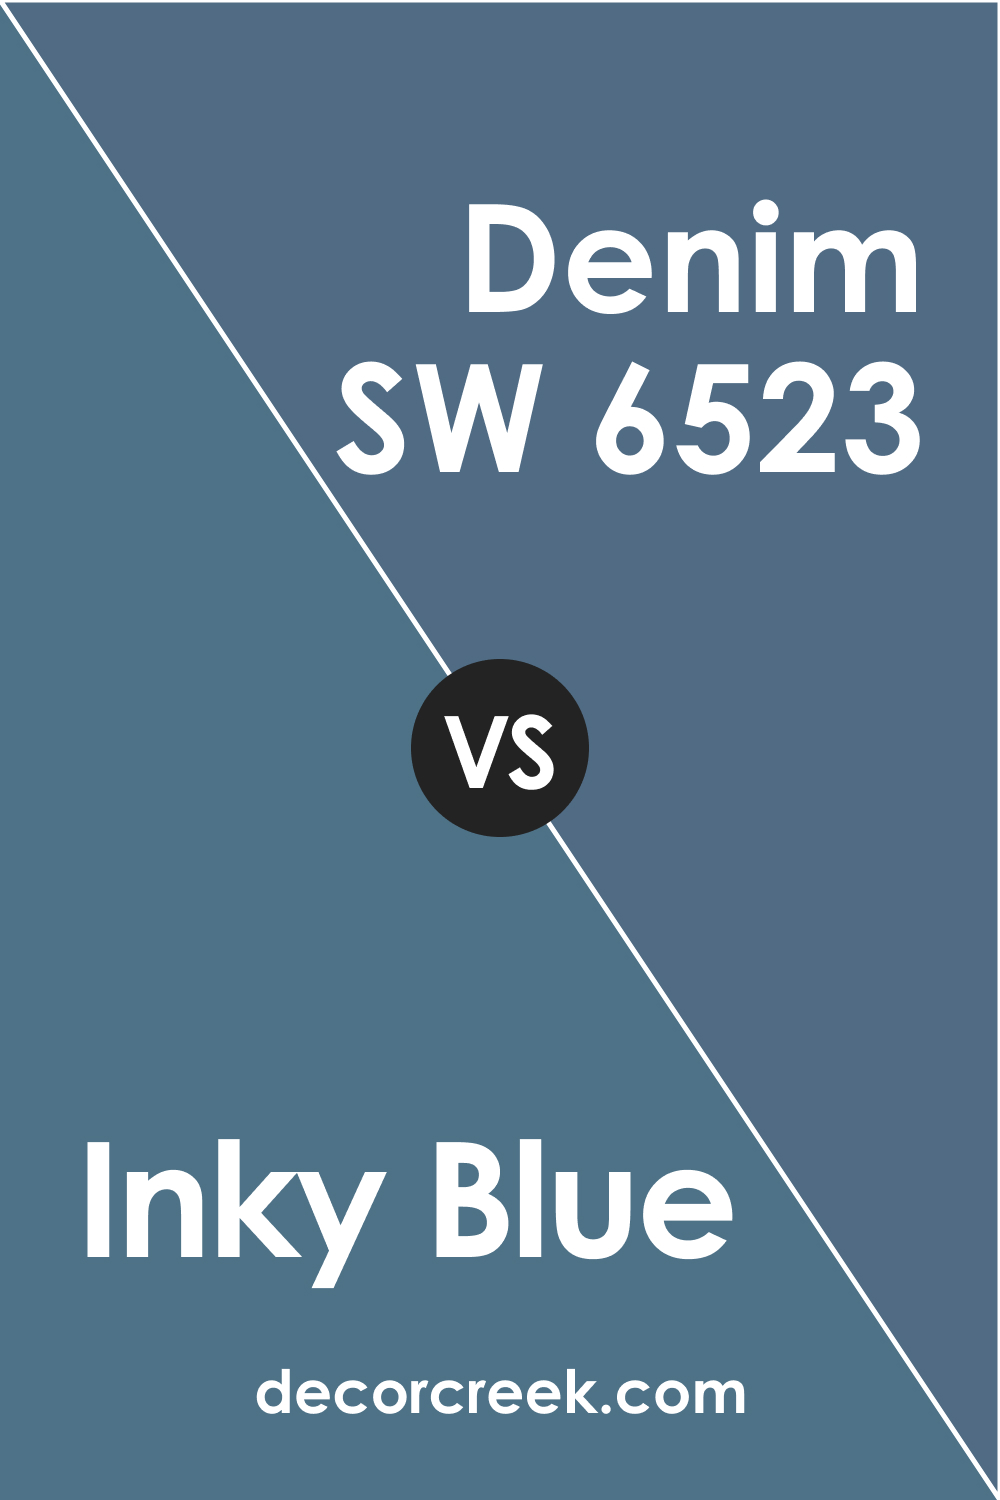 Inky Blue vs Denim